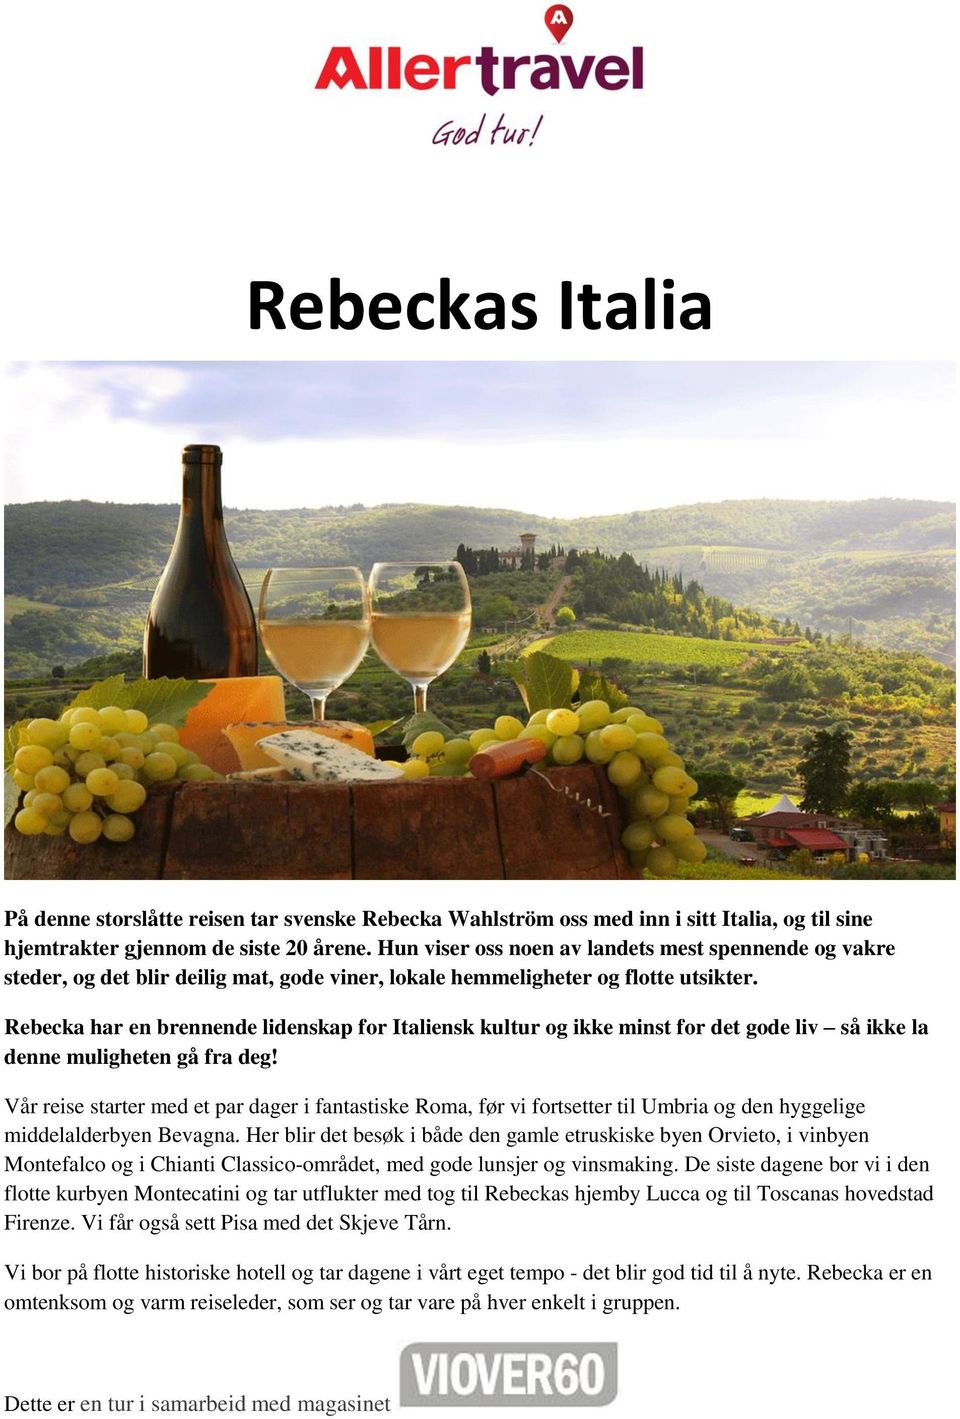 Rebecka har en brennende lidenskap for Italiensk kultur og ikke minst for det gode liv så ikke la denne muligheten gå fra deg!